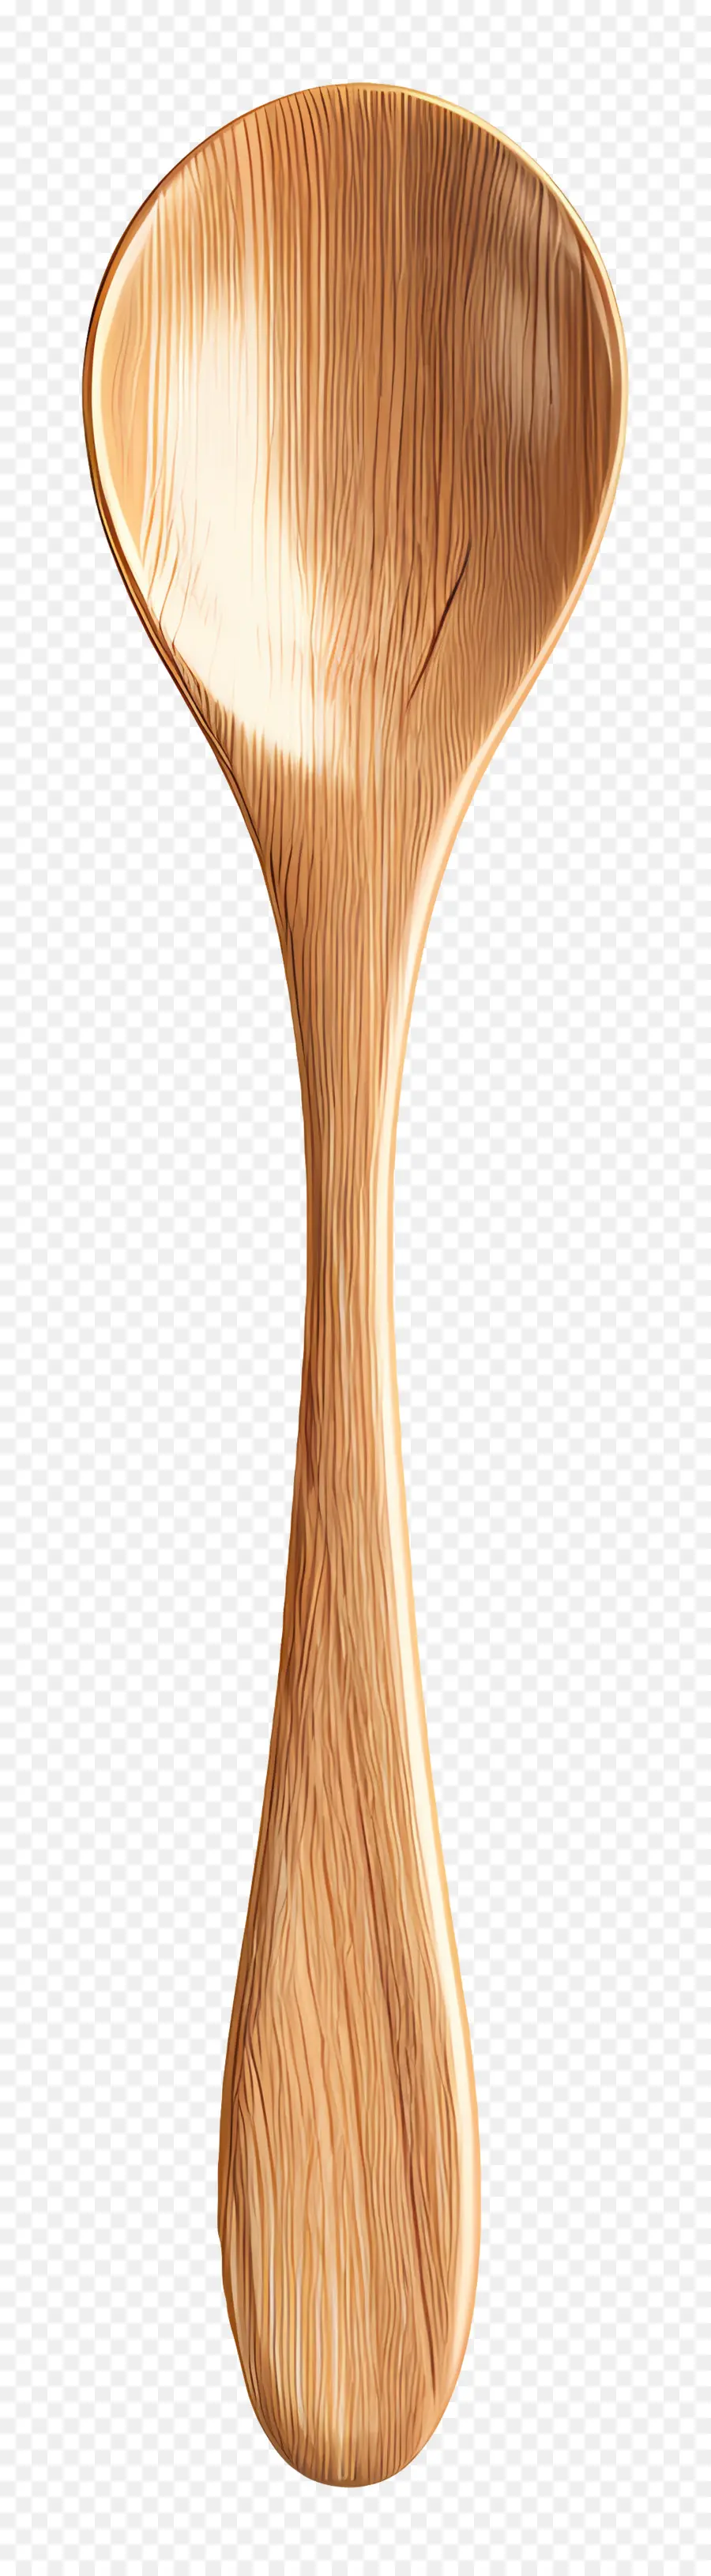 cucchiaio di legno - Cucchiaio di legno artigianale con elegante design curvo